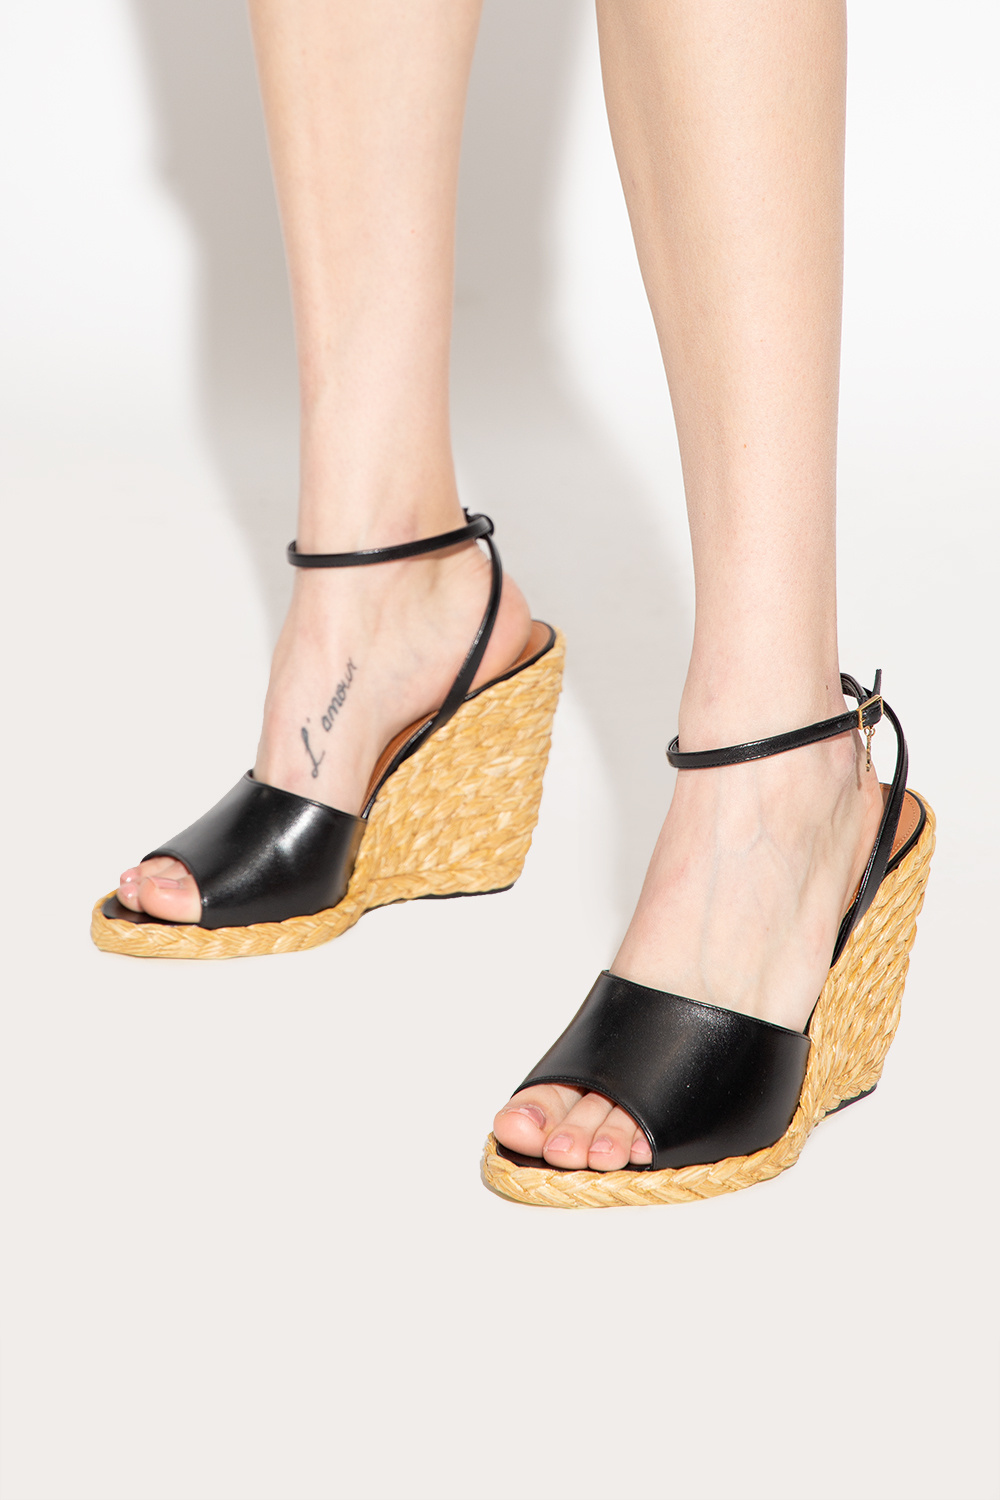 Saint Laurent ‘Paloma’ wedge sandals